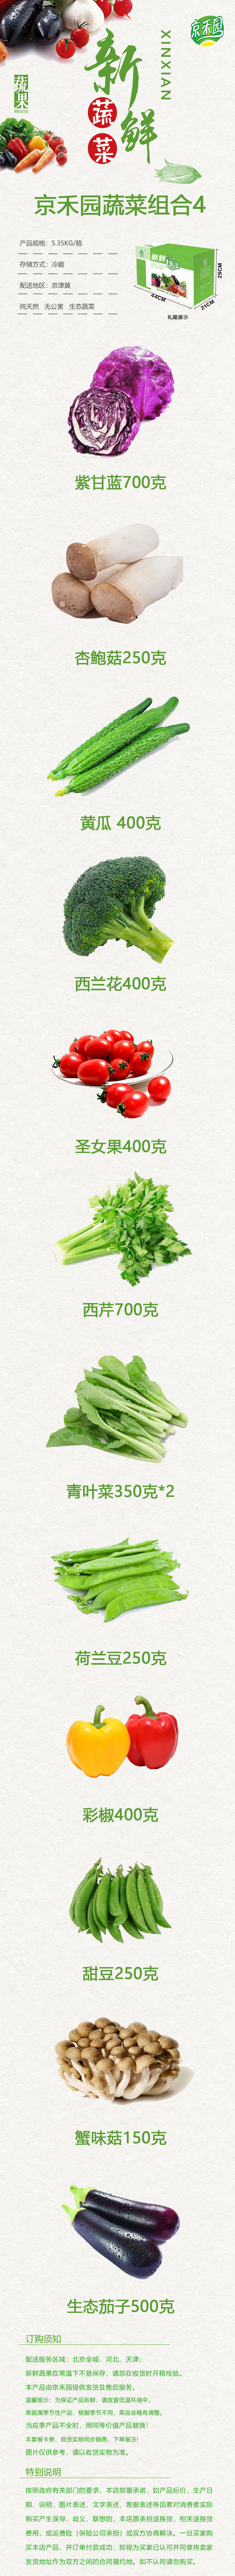  【北京馆】【京郊农品】京禾园蔬菜组合4混装菜约5.35kg 农家自产